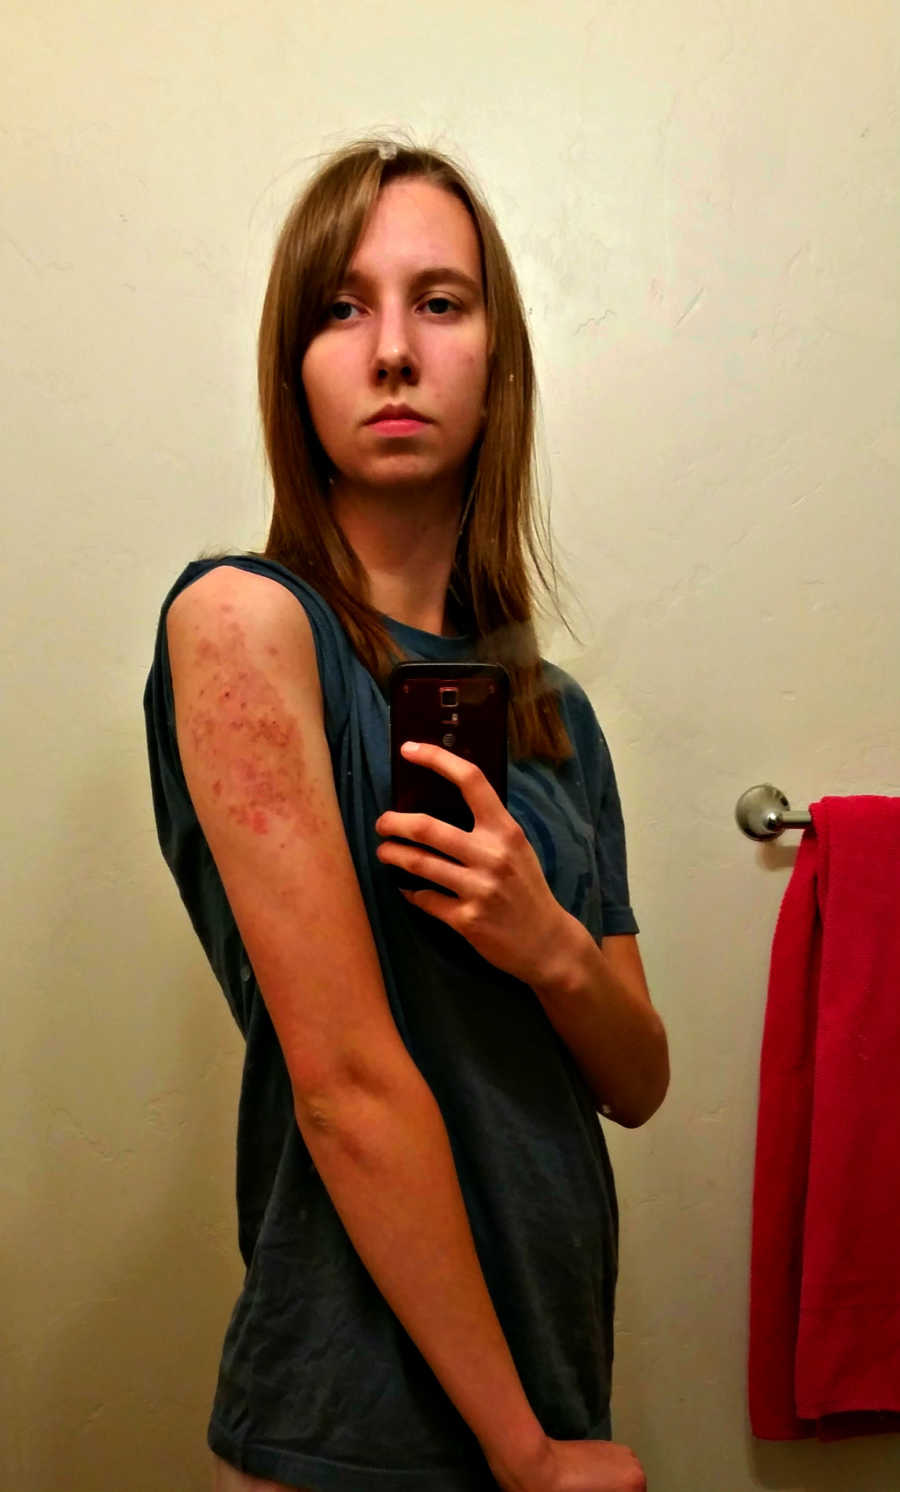 Teen takes mirror selfie showing rash on her arm